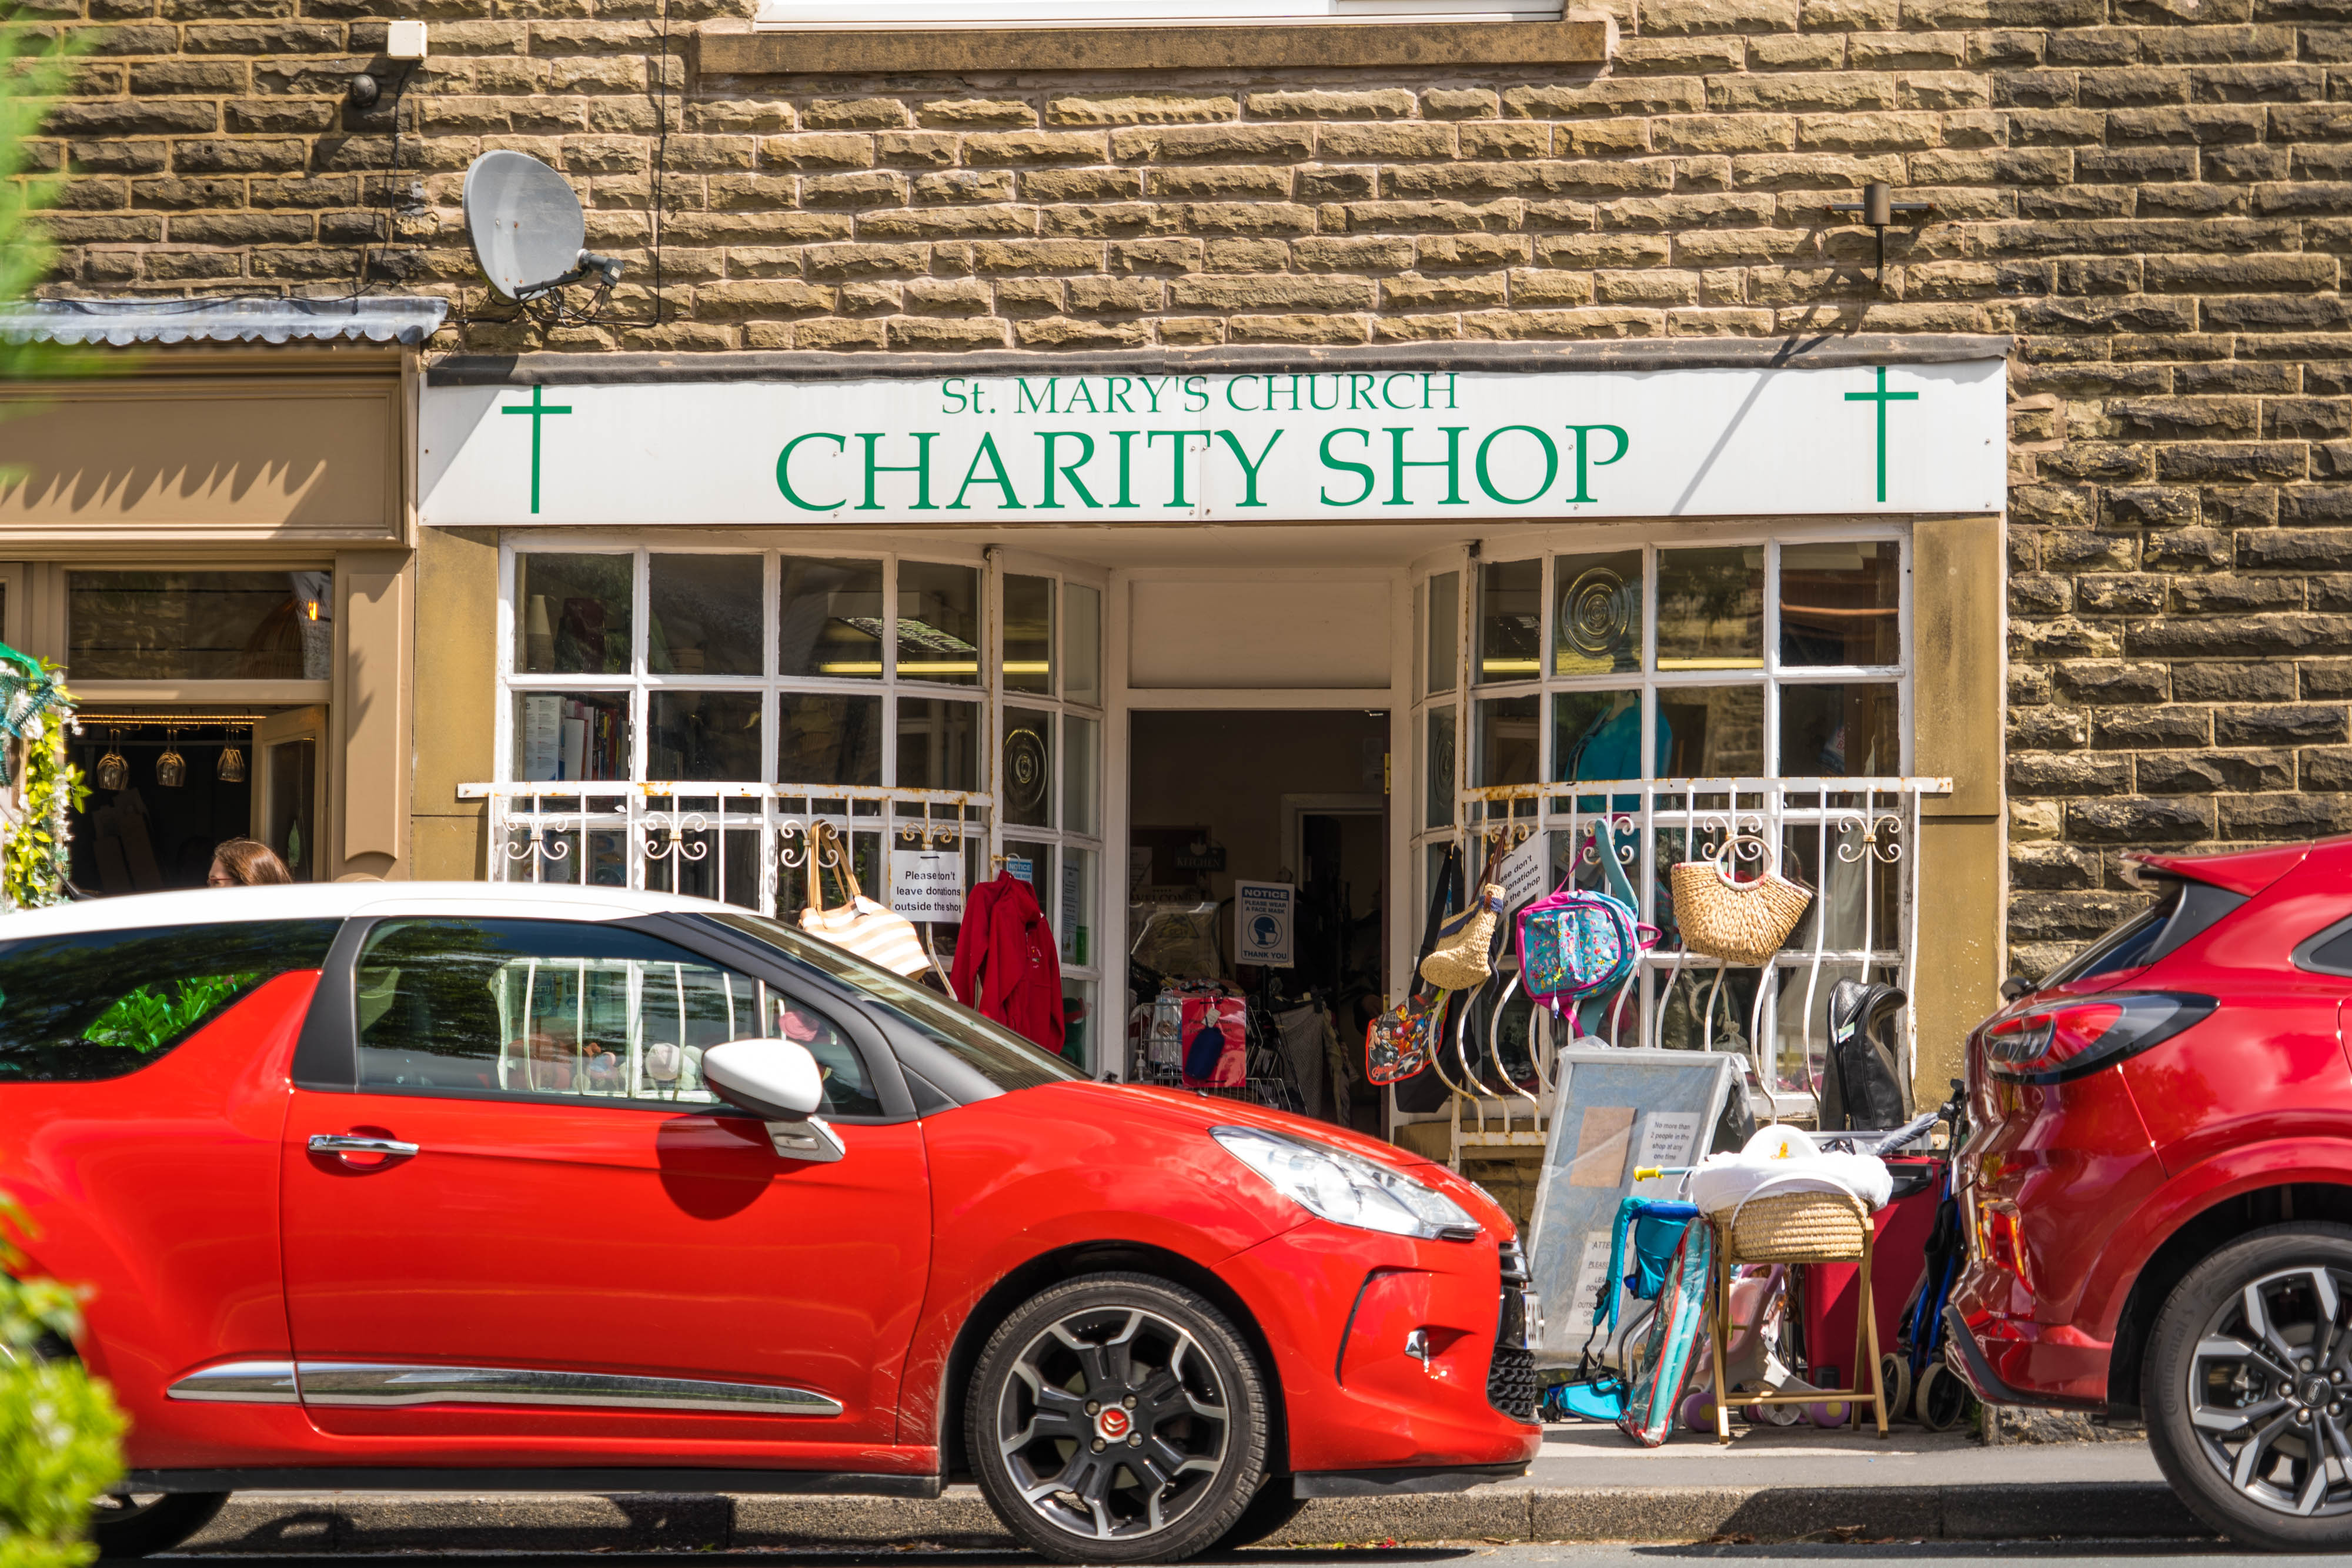 Charity shop is. Charity shops. Charity shops in the uk. Красота спасет мир Charity shop. Charity shop meaning.